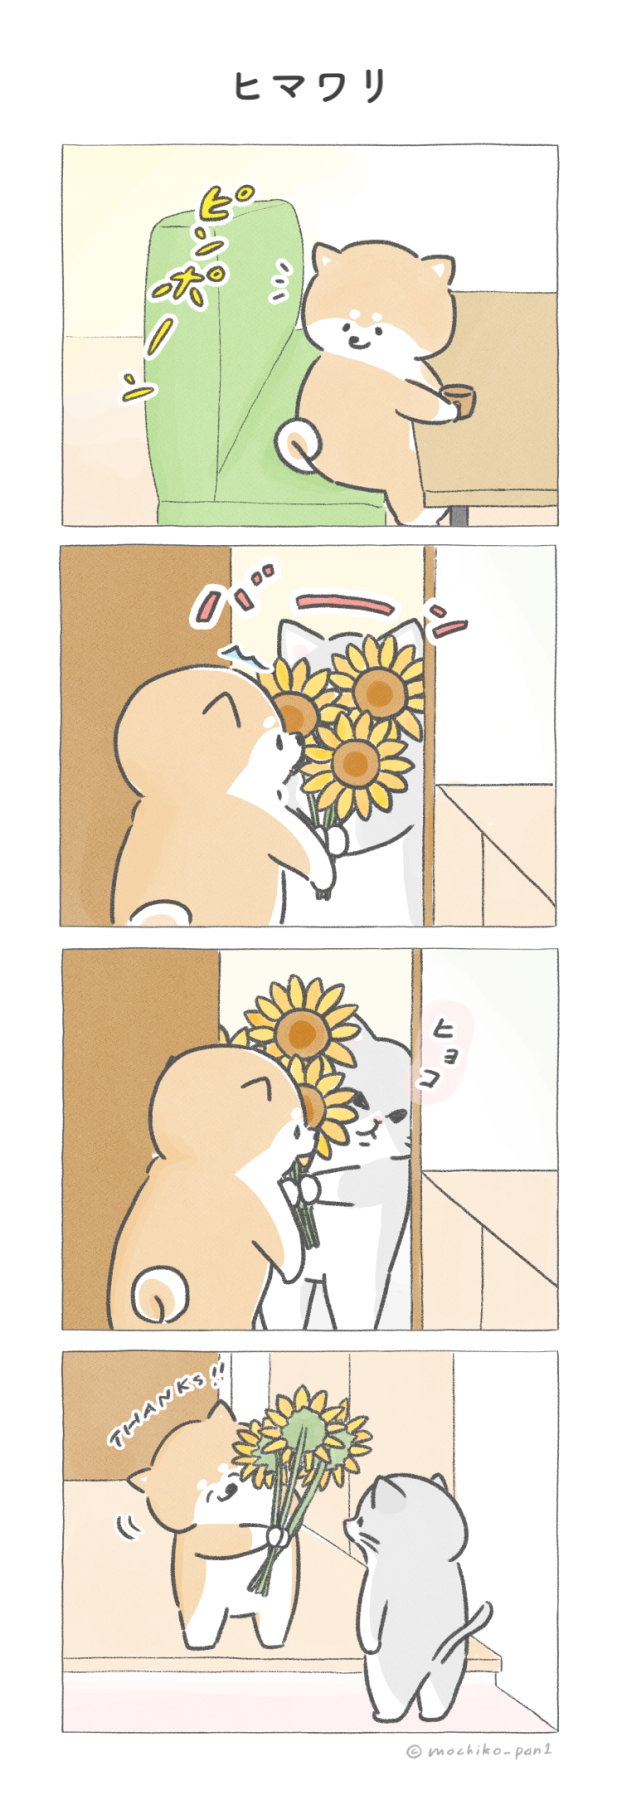 【四コマ漫画】vol.79 「ヒマワリ」｜おはよう！おしばと愉快な仲間たち